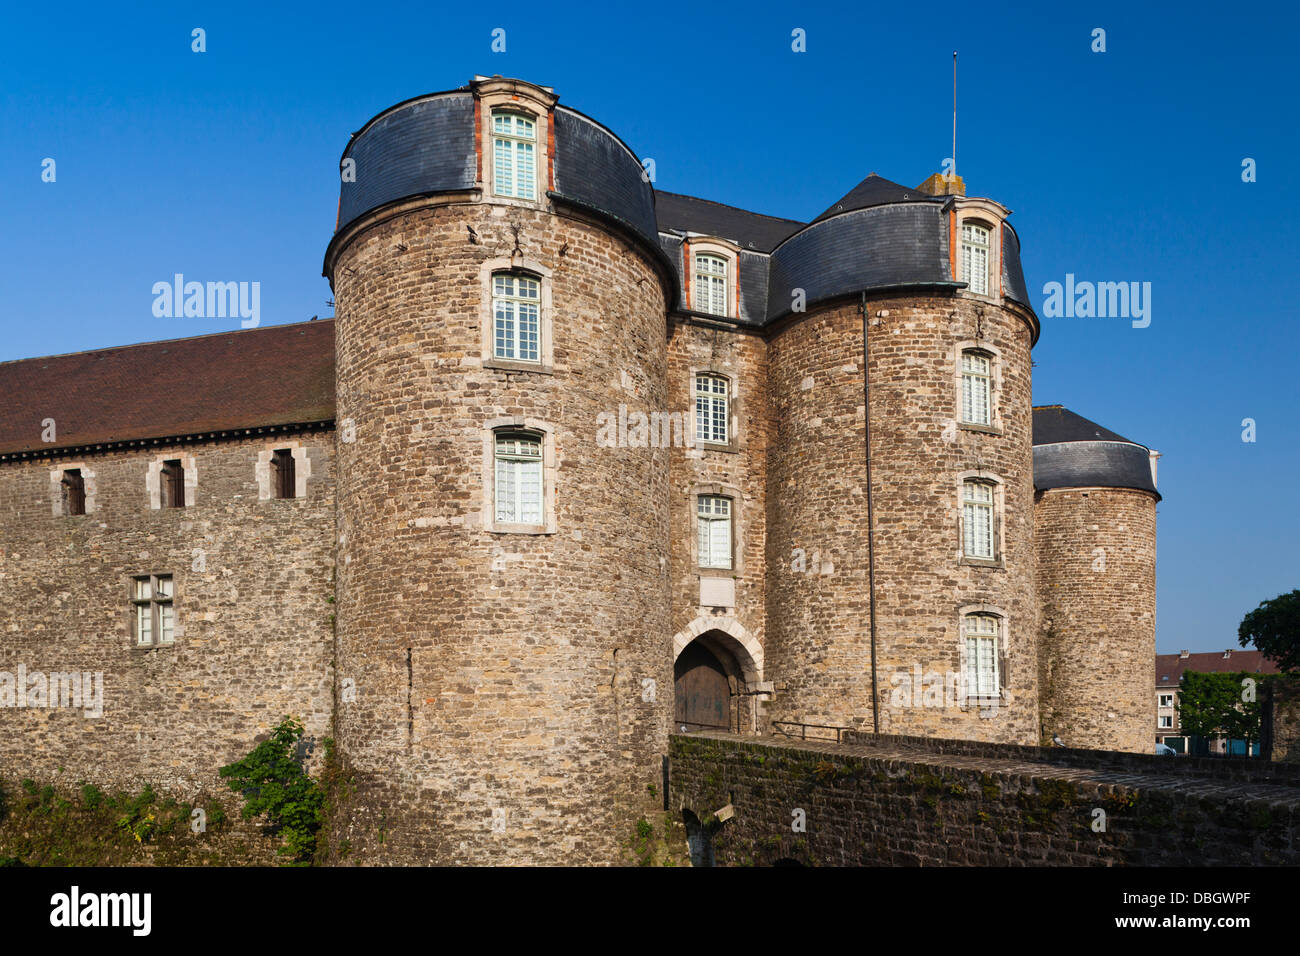 France, Pas de Calais, Boulogne sur Mer, Haut Ville, Upper City, Chateau Musee, castle museum. Stock Photo